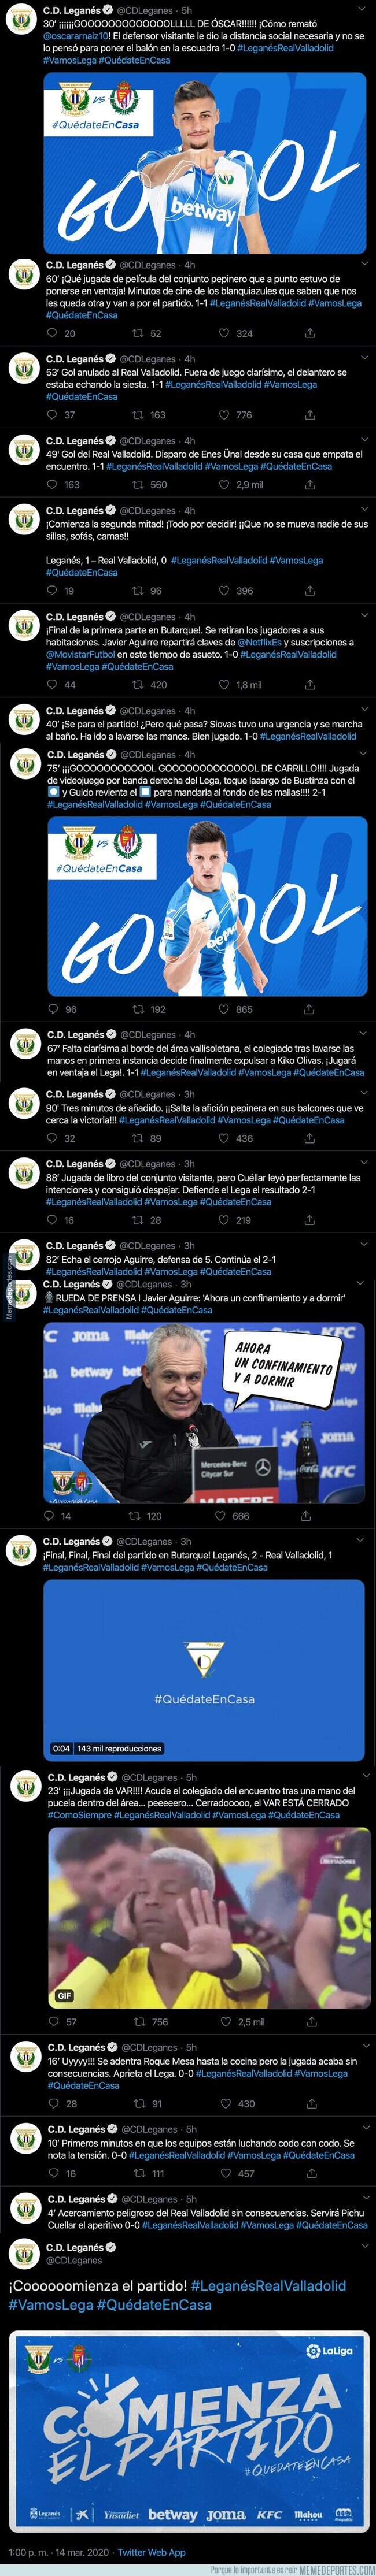 1100862 - El Leganés se la saca en Twitter y retransmite su partido ficticio que ha sido suspendido por la crisis del coronavirus